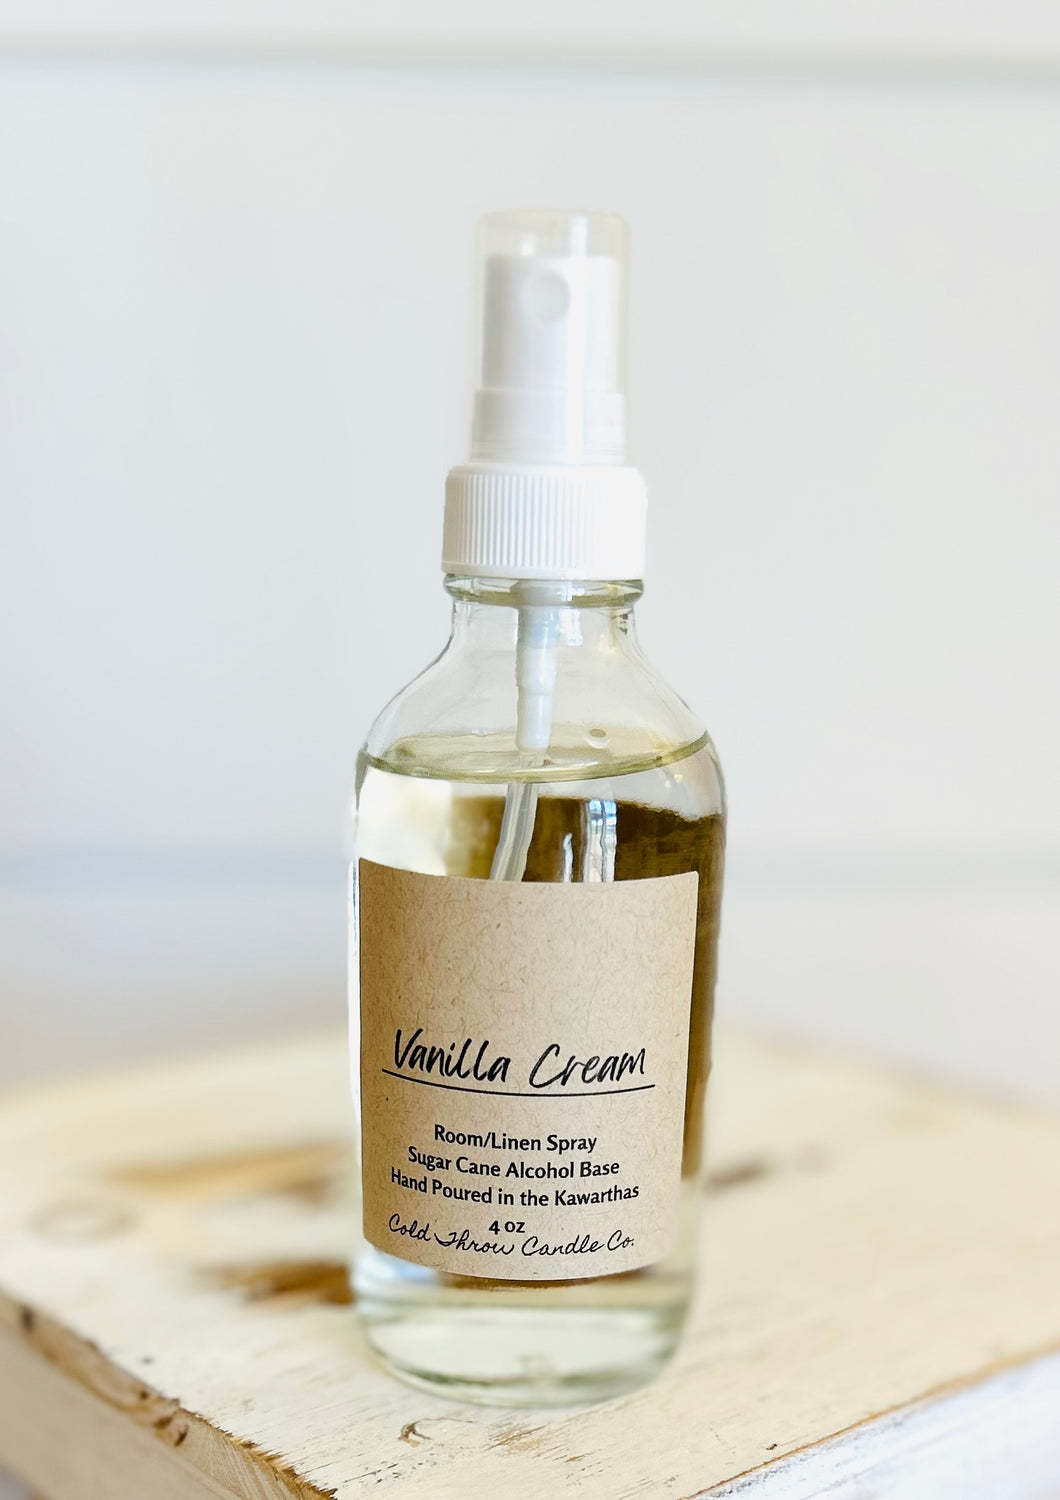 Vanilla Cream Room/Linen Spray